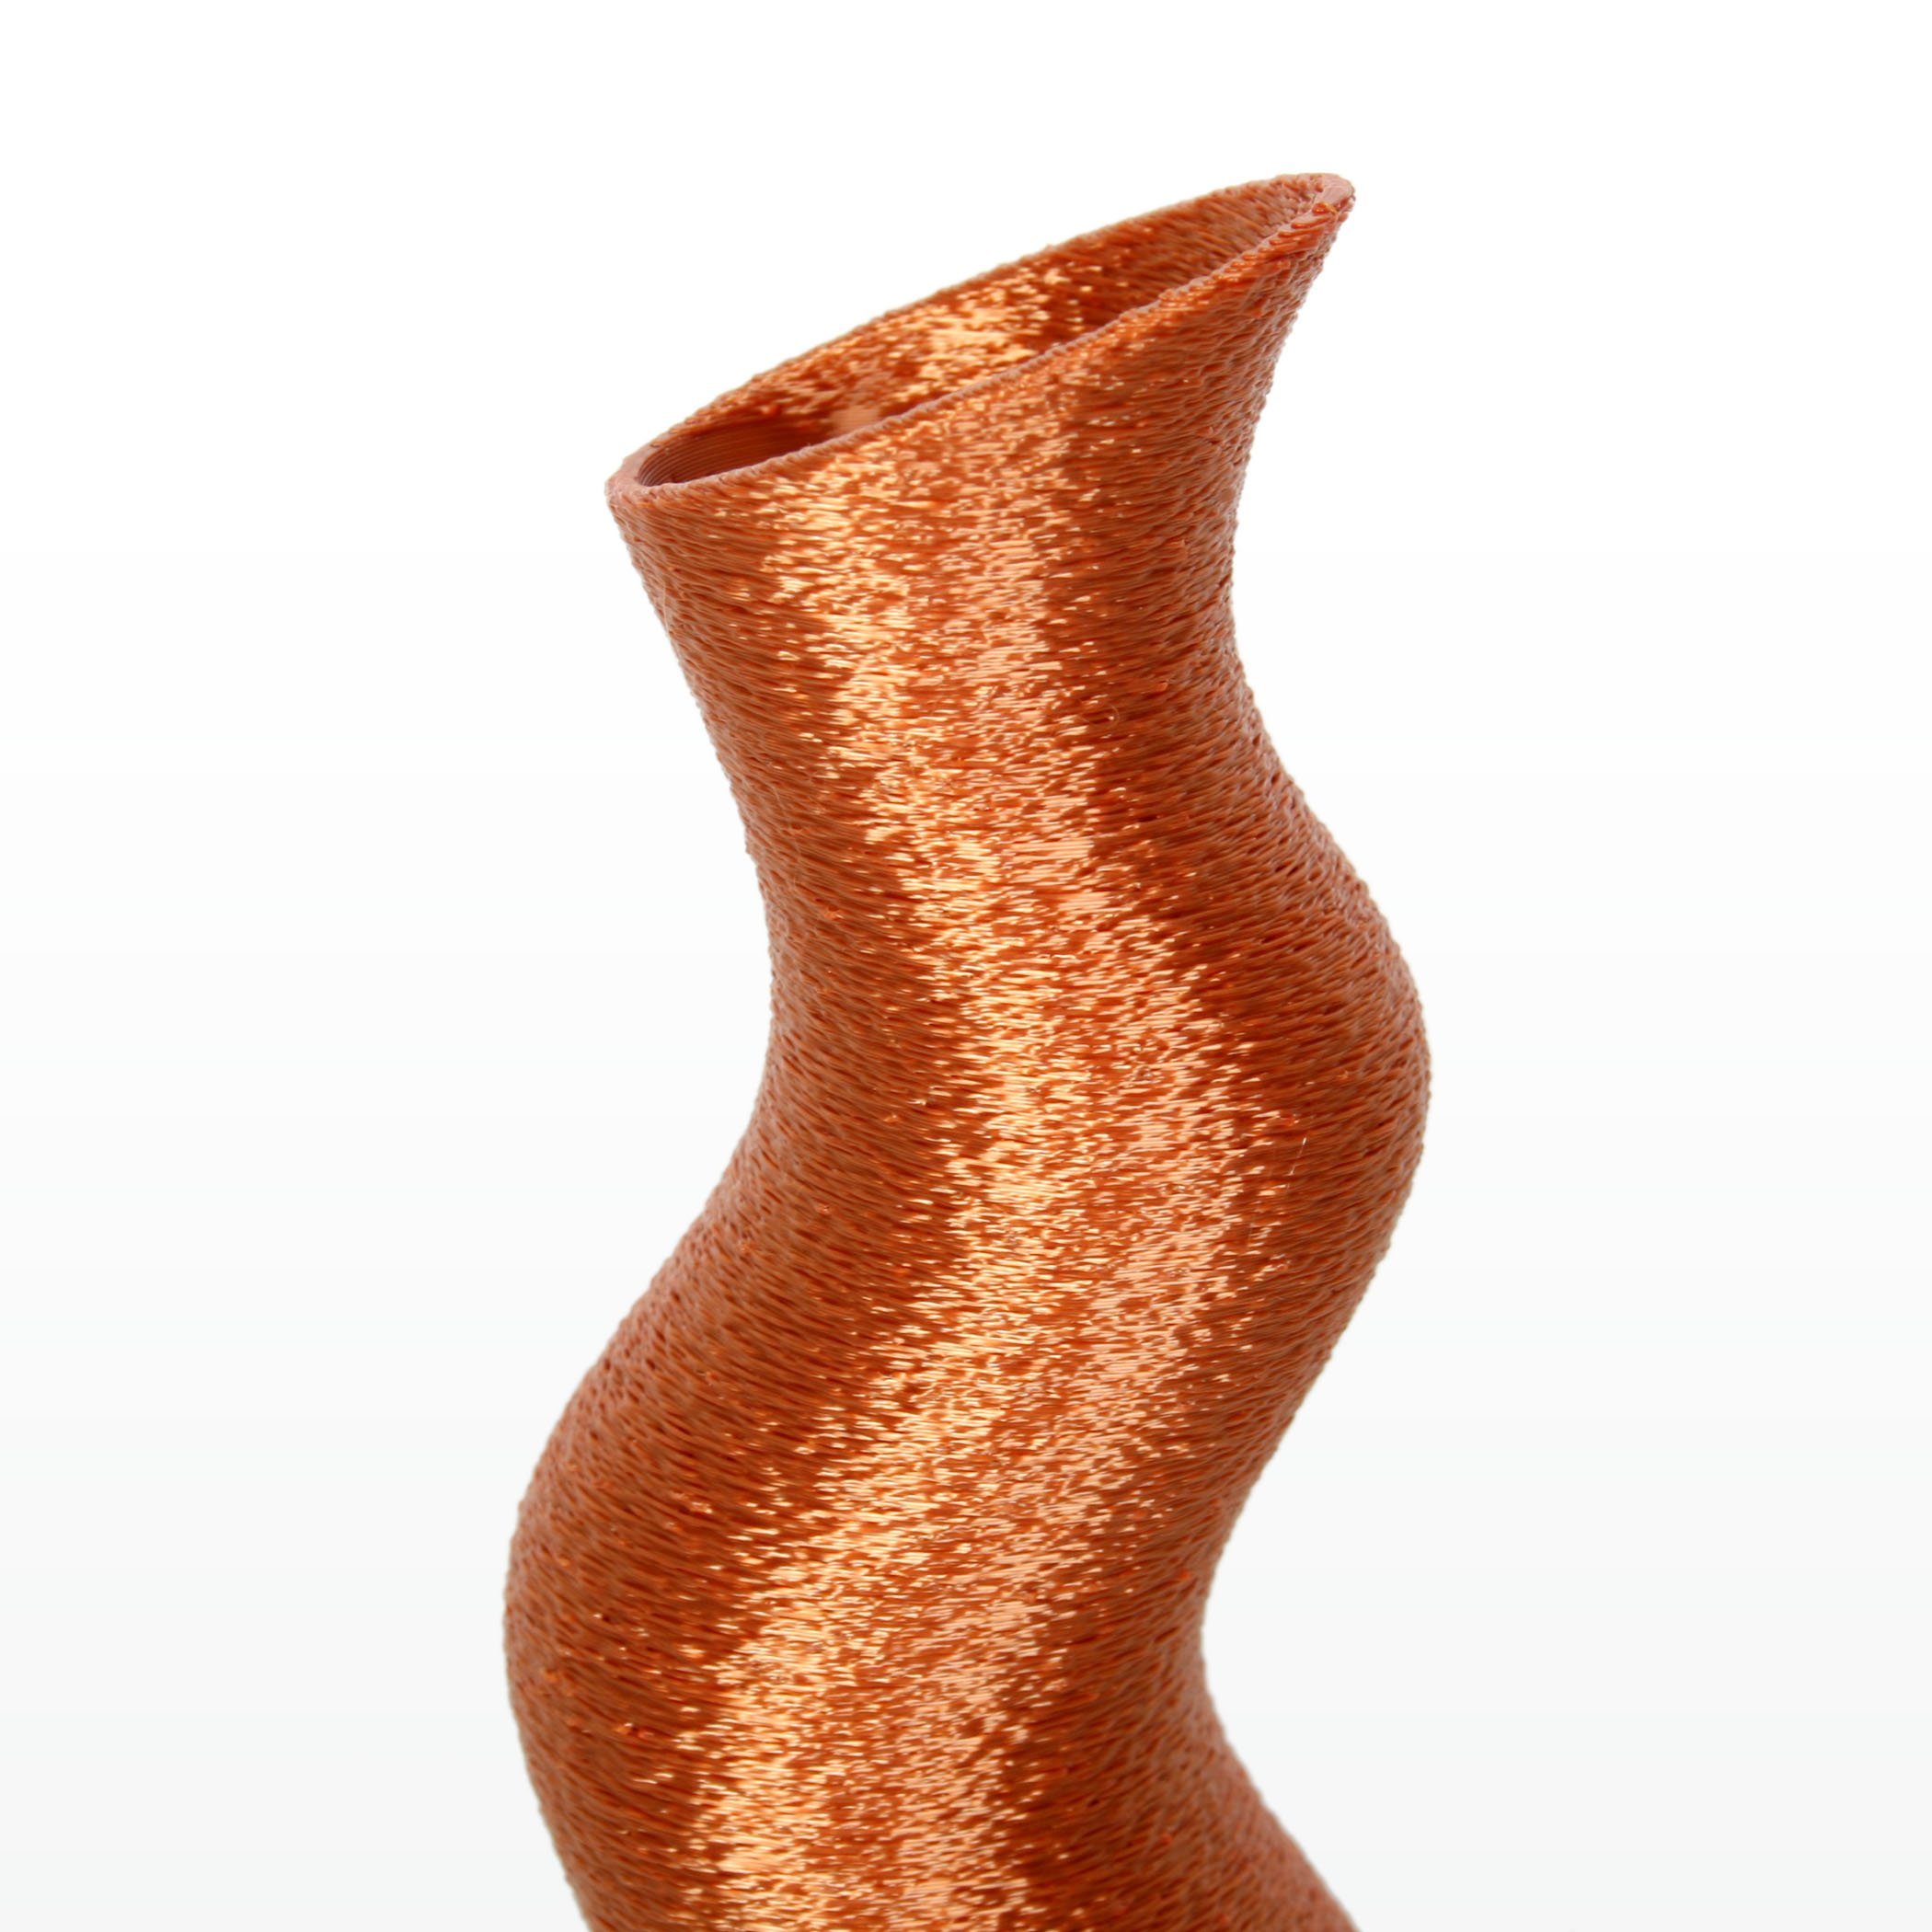 & Kreative – Dekorative aus wasserdicht Designer Rohstoffen; Bio-Kunststoff, Vase bruchsicher nachwachsenden Bronze Dekovase Feder aus Blumenvase